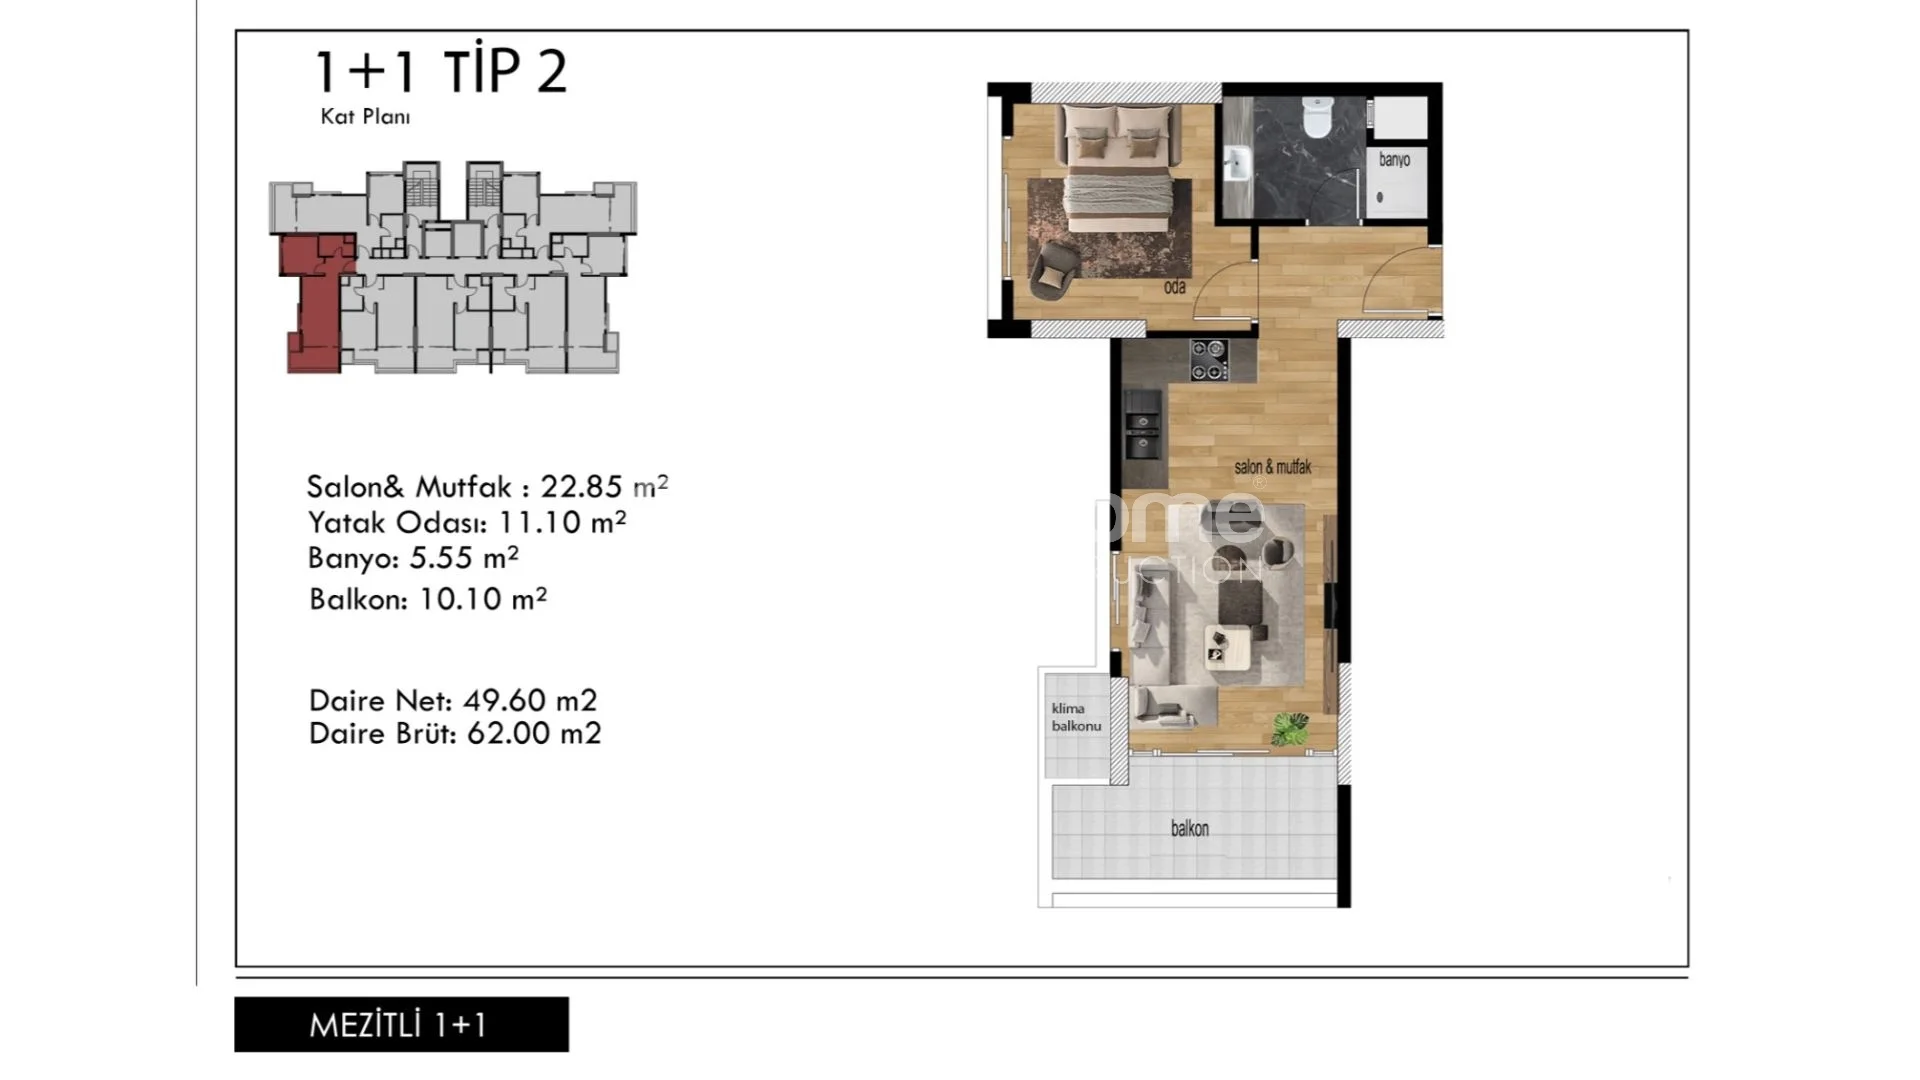 Prekrasni apartmani modernog dizajna u Mezitli, Mersin plan - 23